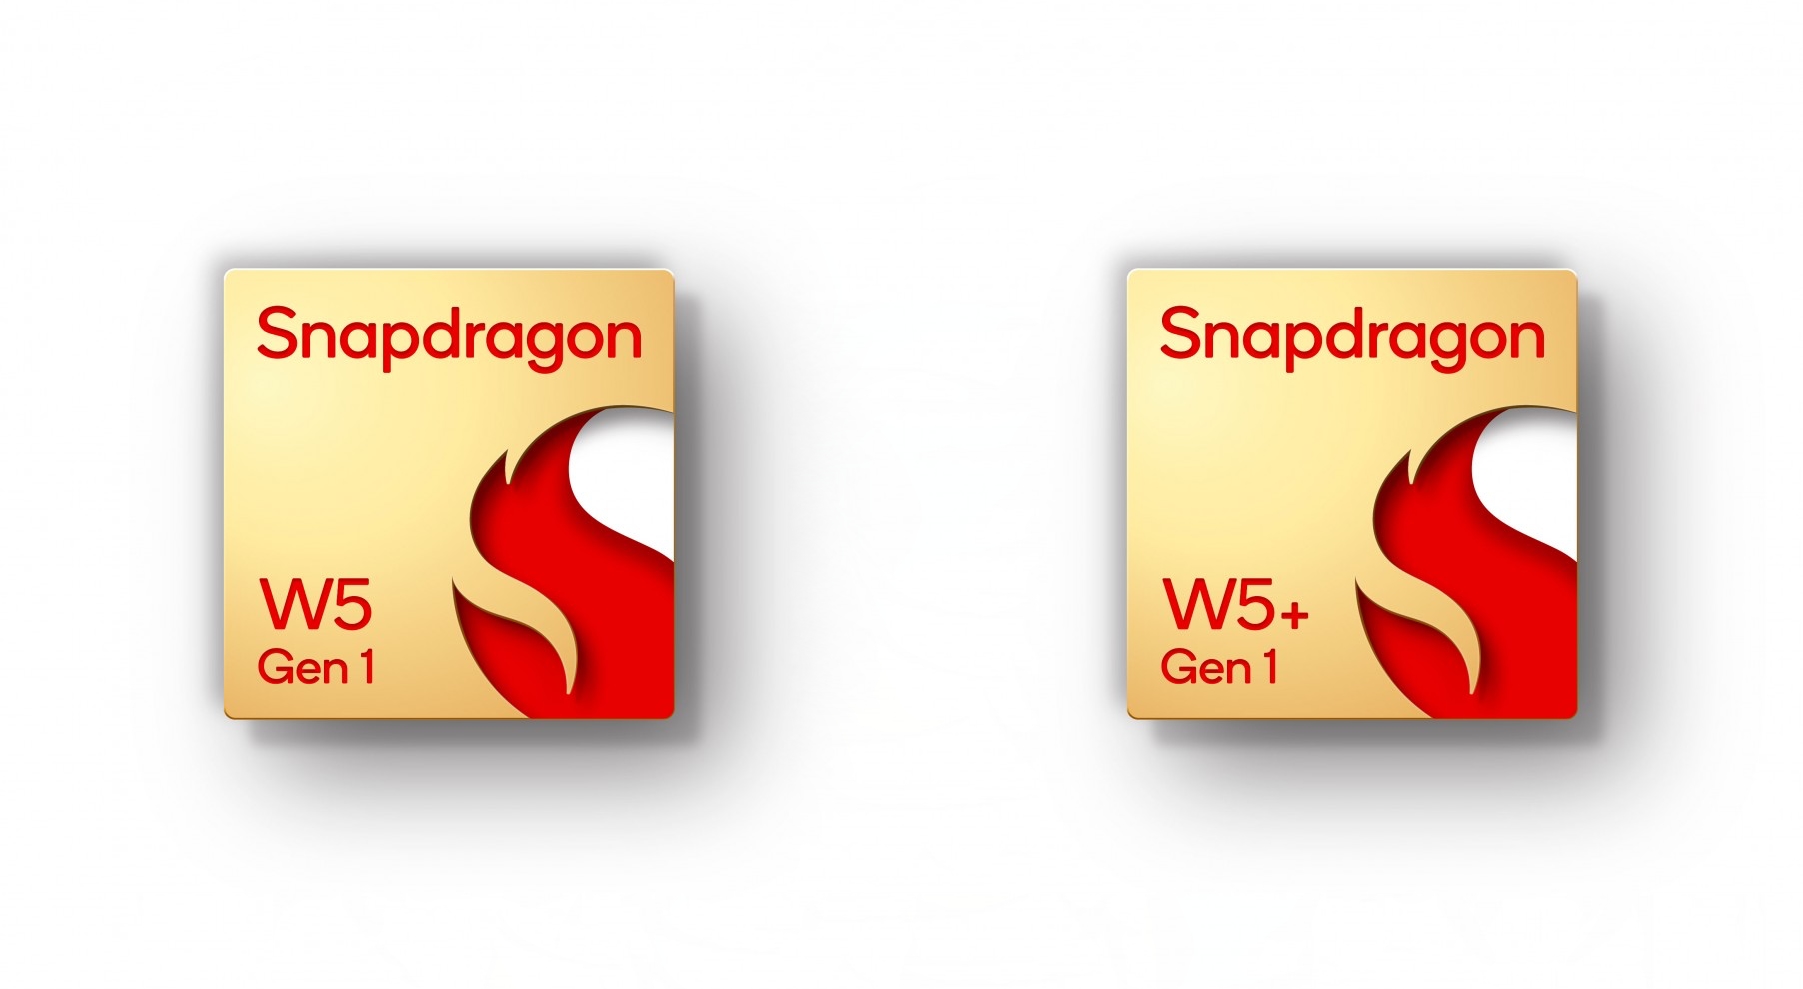 Qualcomm hat den Snapdragon W5 Gen 1 und Snapdragon W5+ Gen 1 vorgestellt: neue Prozessoren für Smartwatches